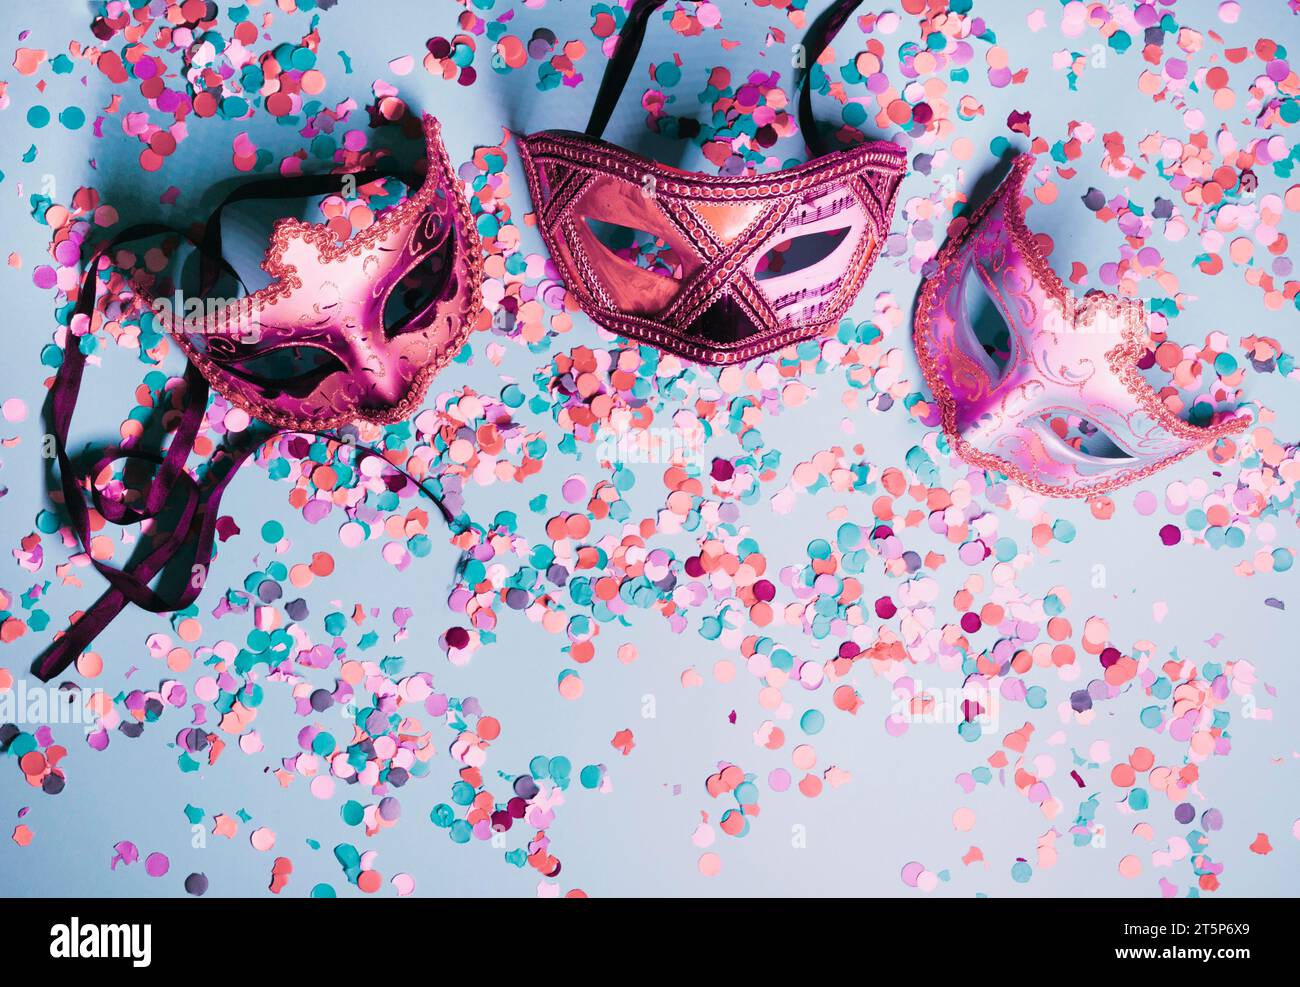 Masque pour les yeux de fête de variété avec fond bleu confettis coloré Banque D'Images